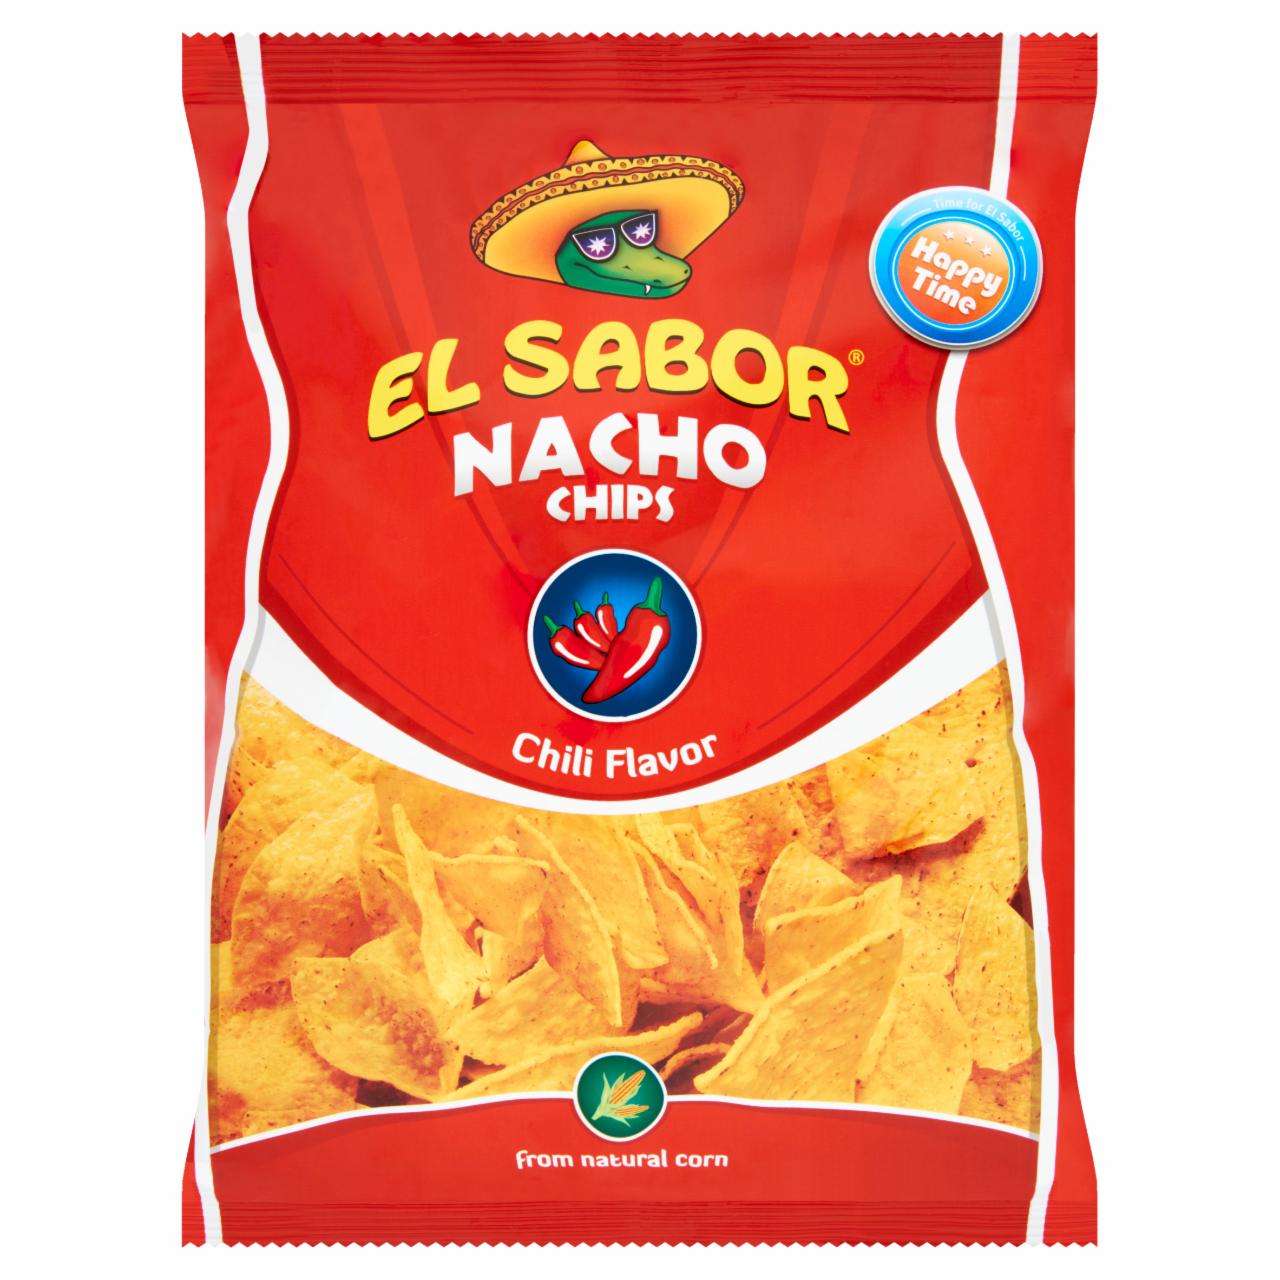 Képek - El Sabor nacho chips chili ízesítéssel 100 g